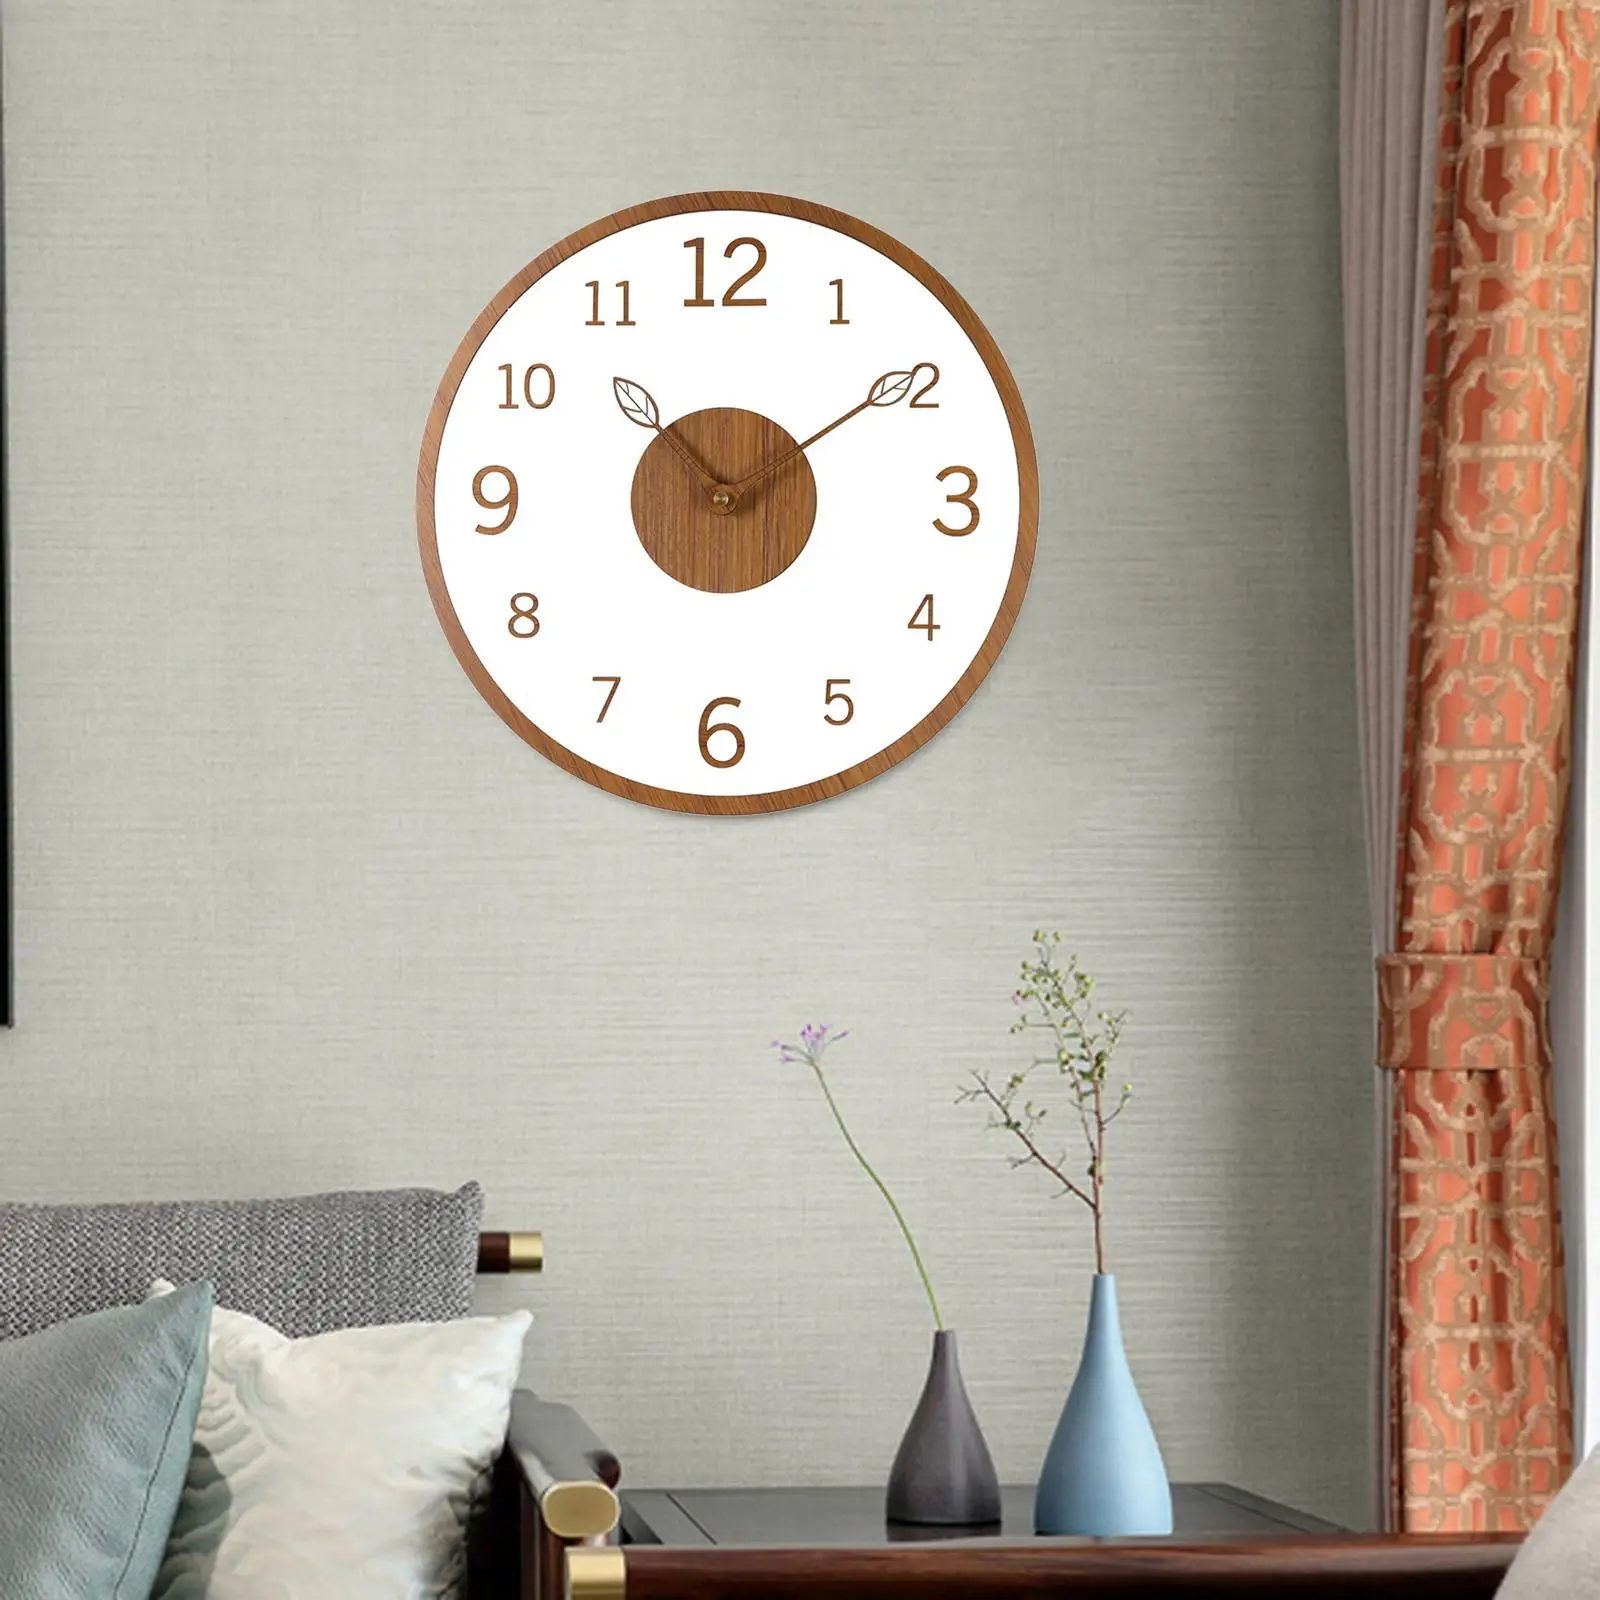 12 Inch Wall Clock Silent Non-Ticking Wooden Clock, Simple Modern Light Wooden